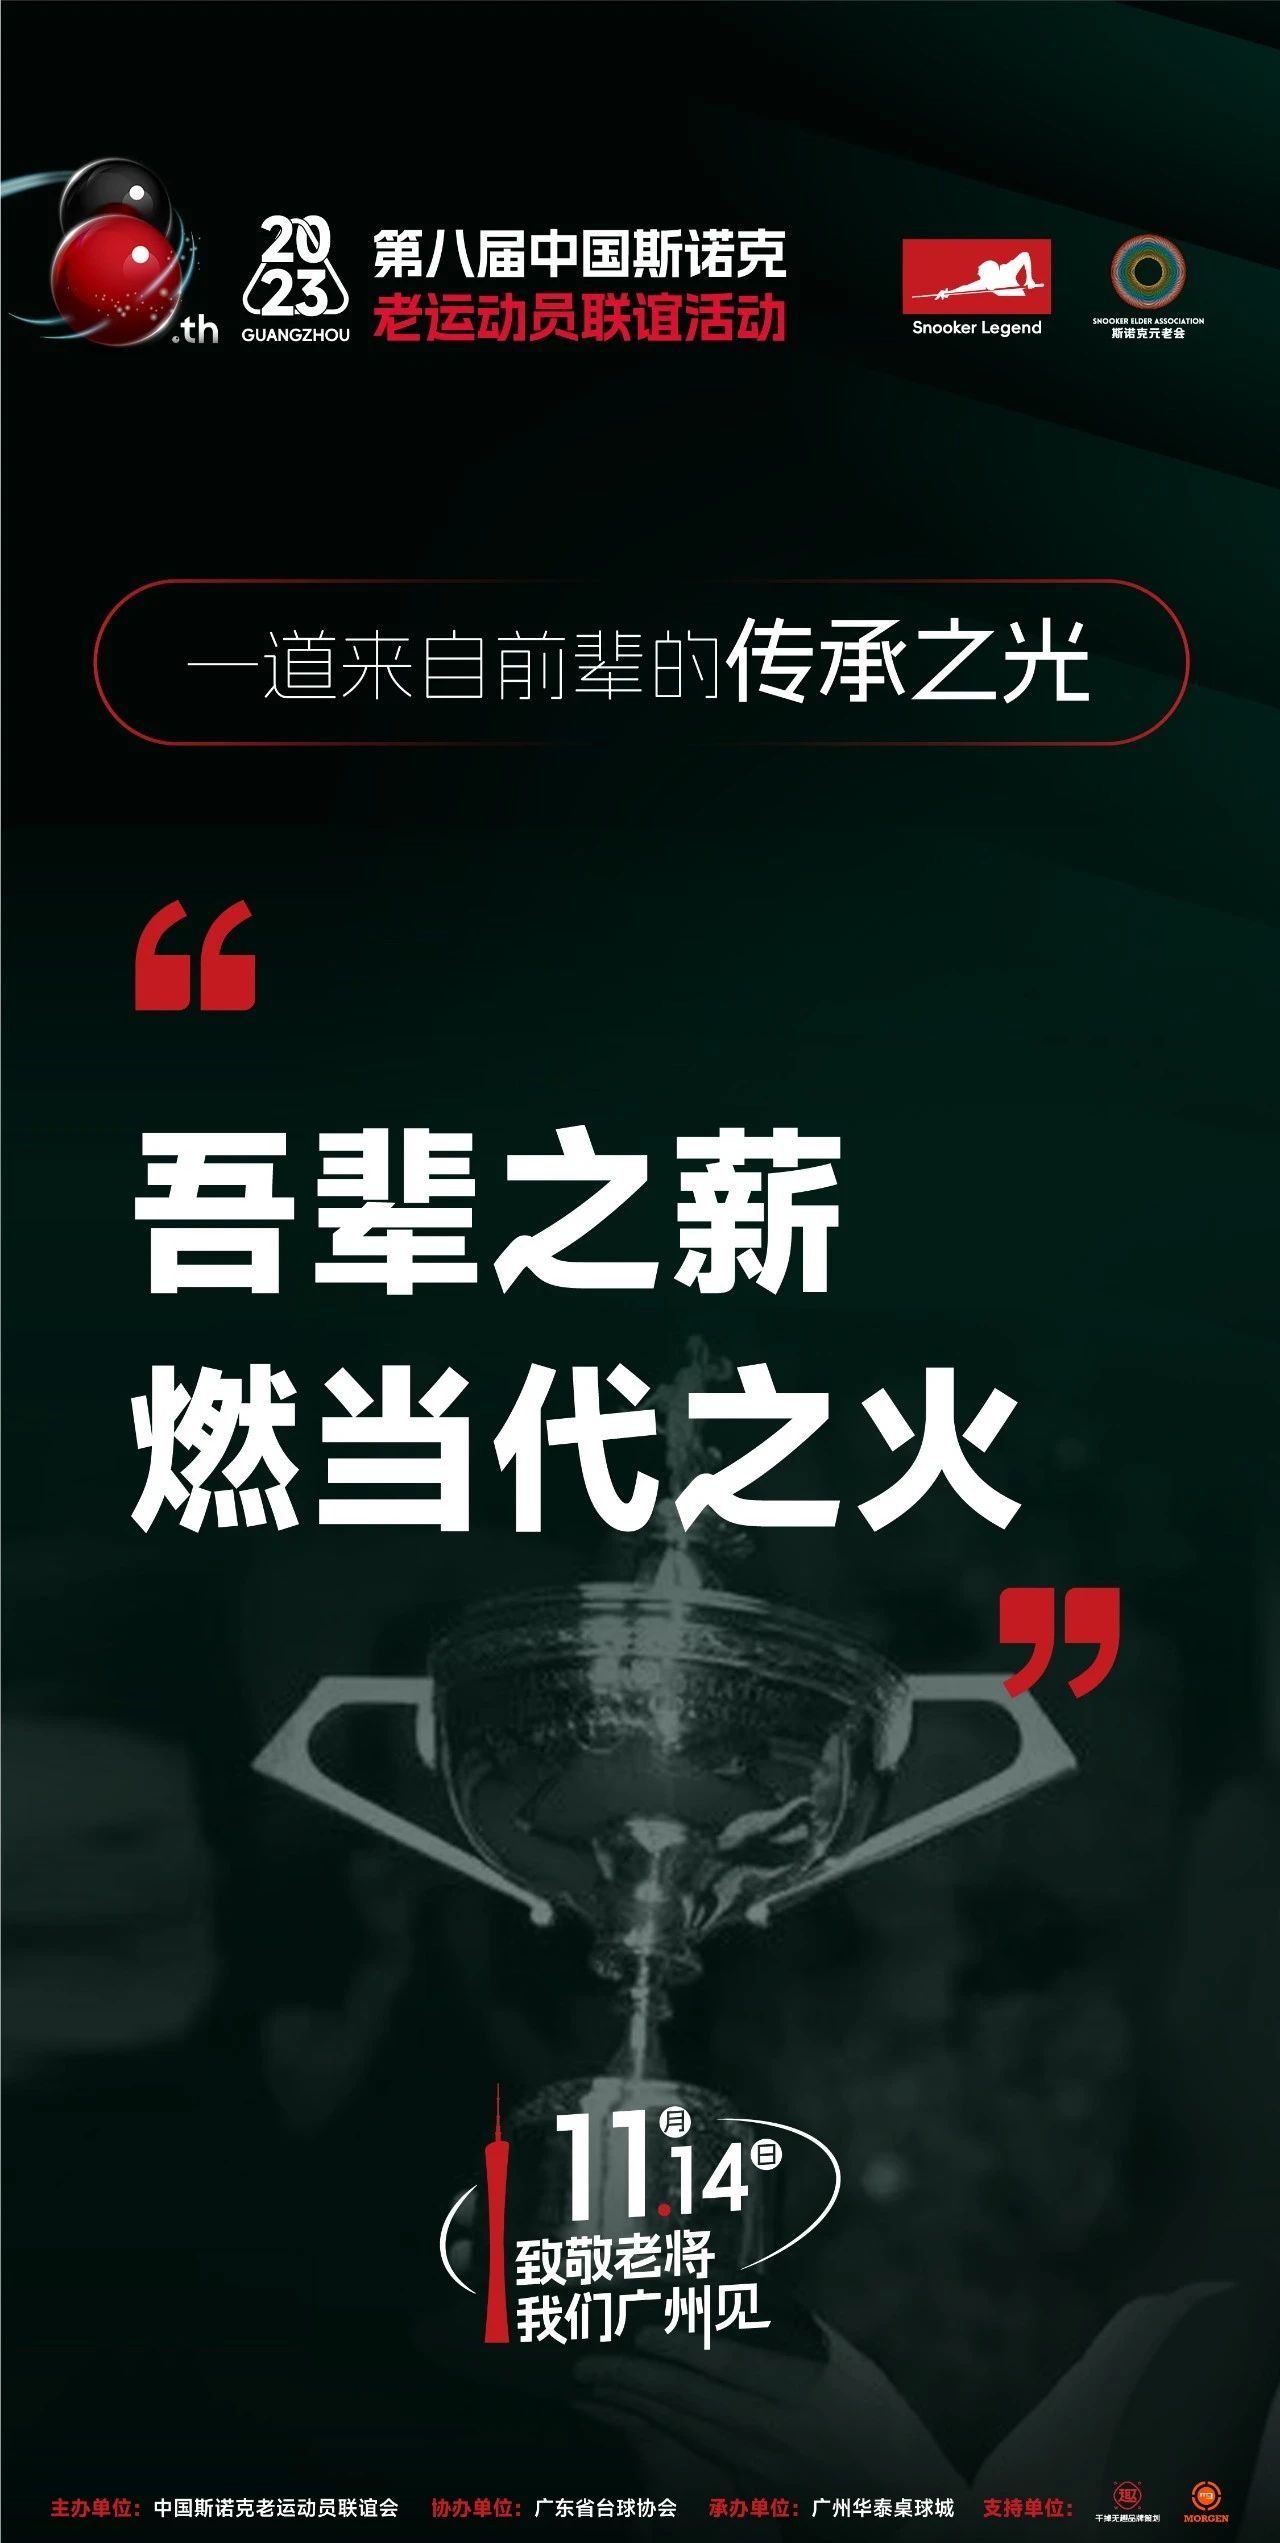 第八届中国斯诺克老运动员联谊活动 | 一道来自前辈的传承之光......